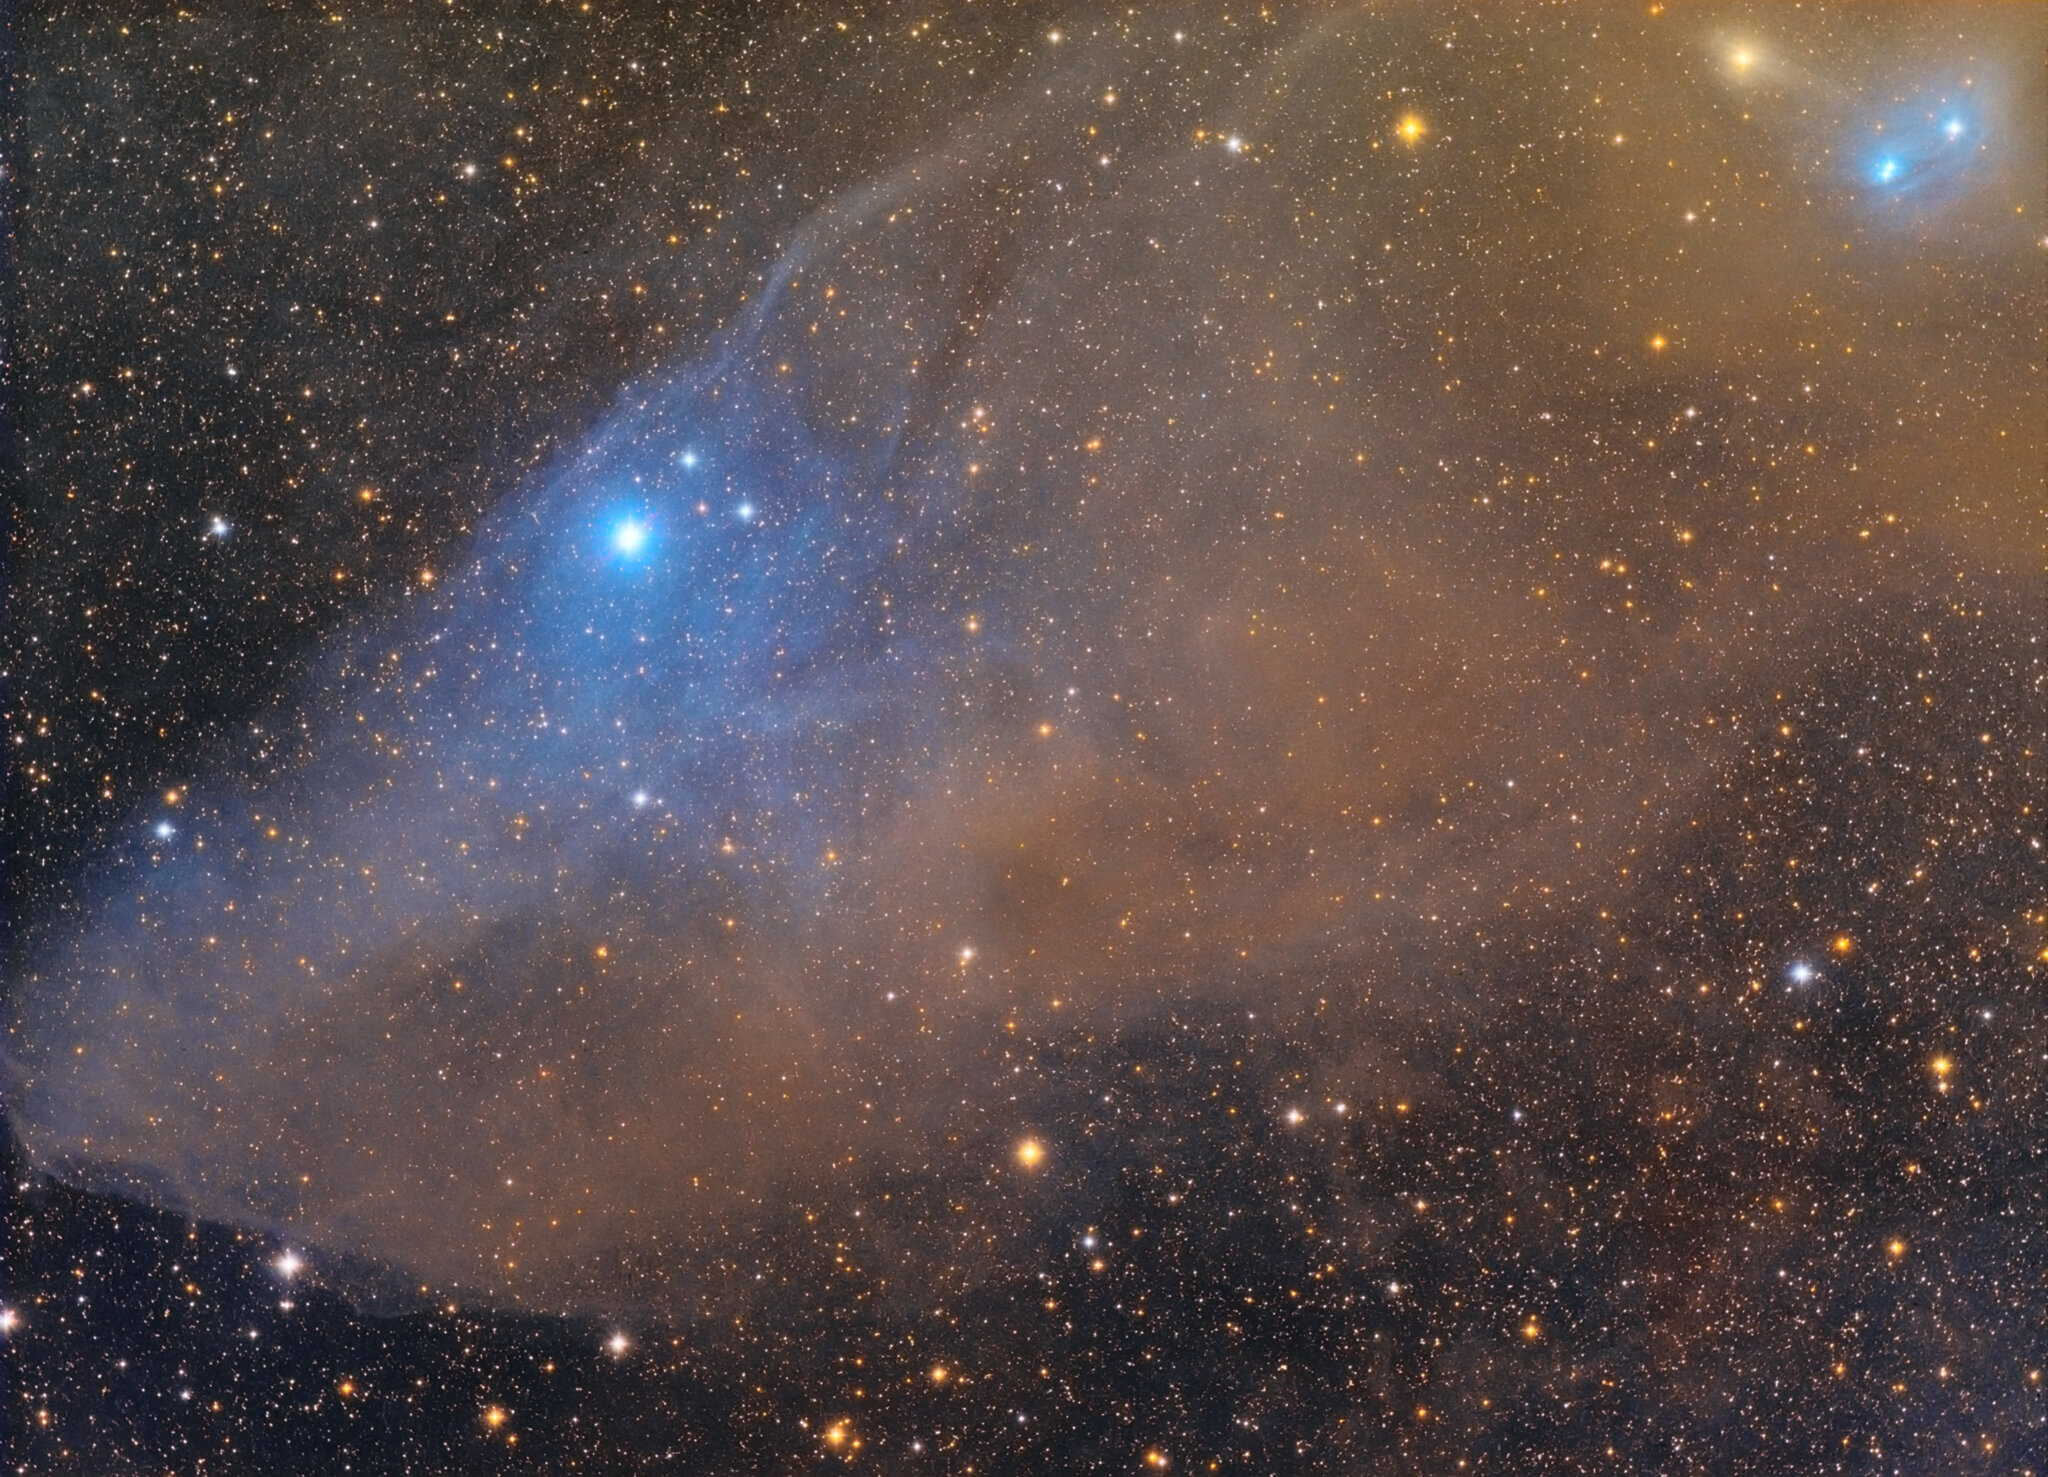 Blue Horsehead Nebula - Ic 4592